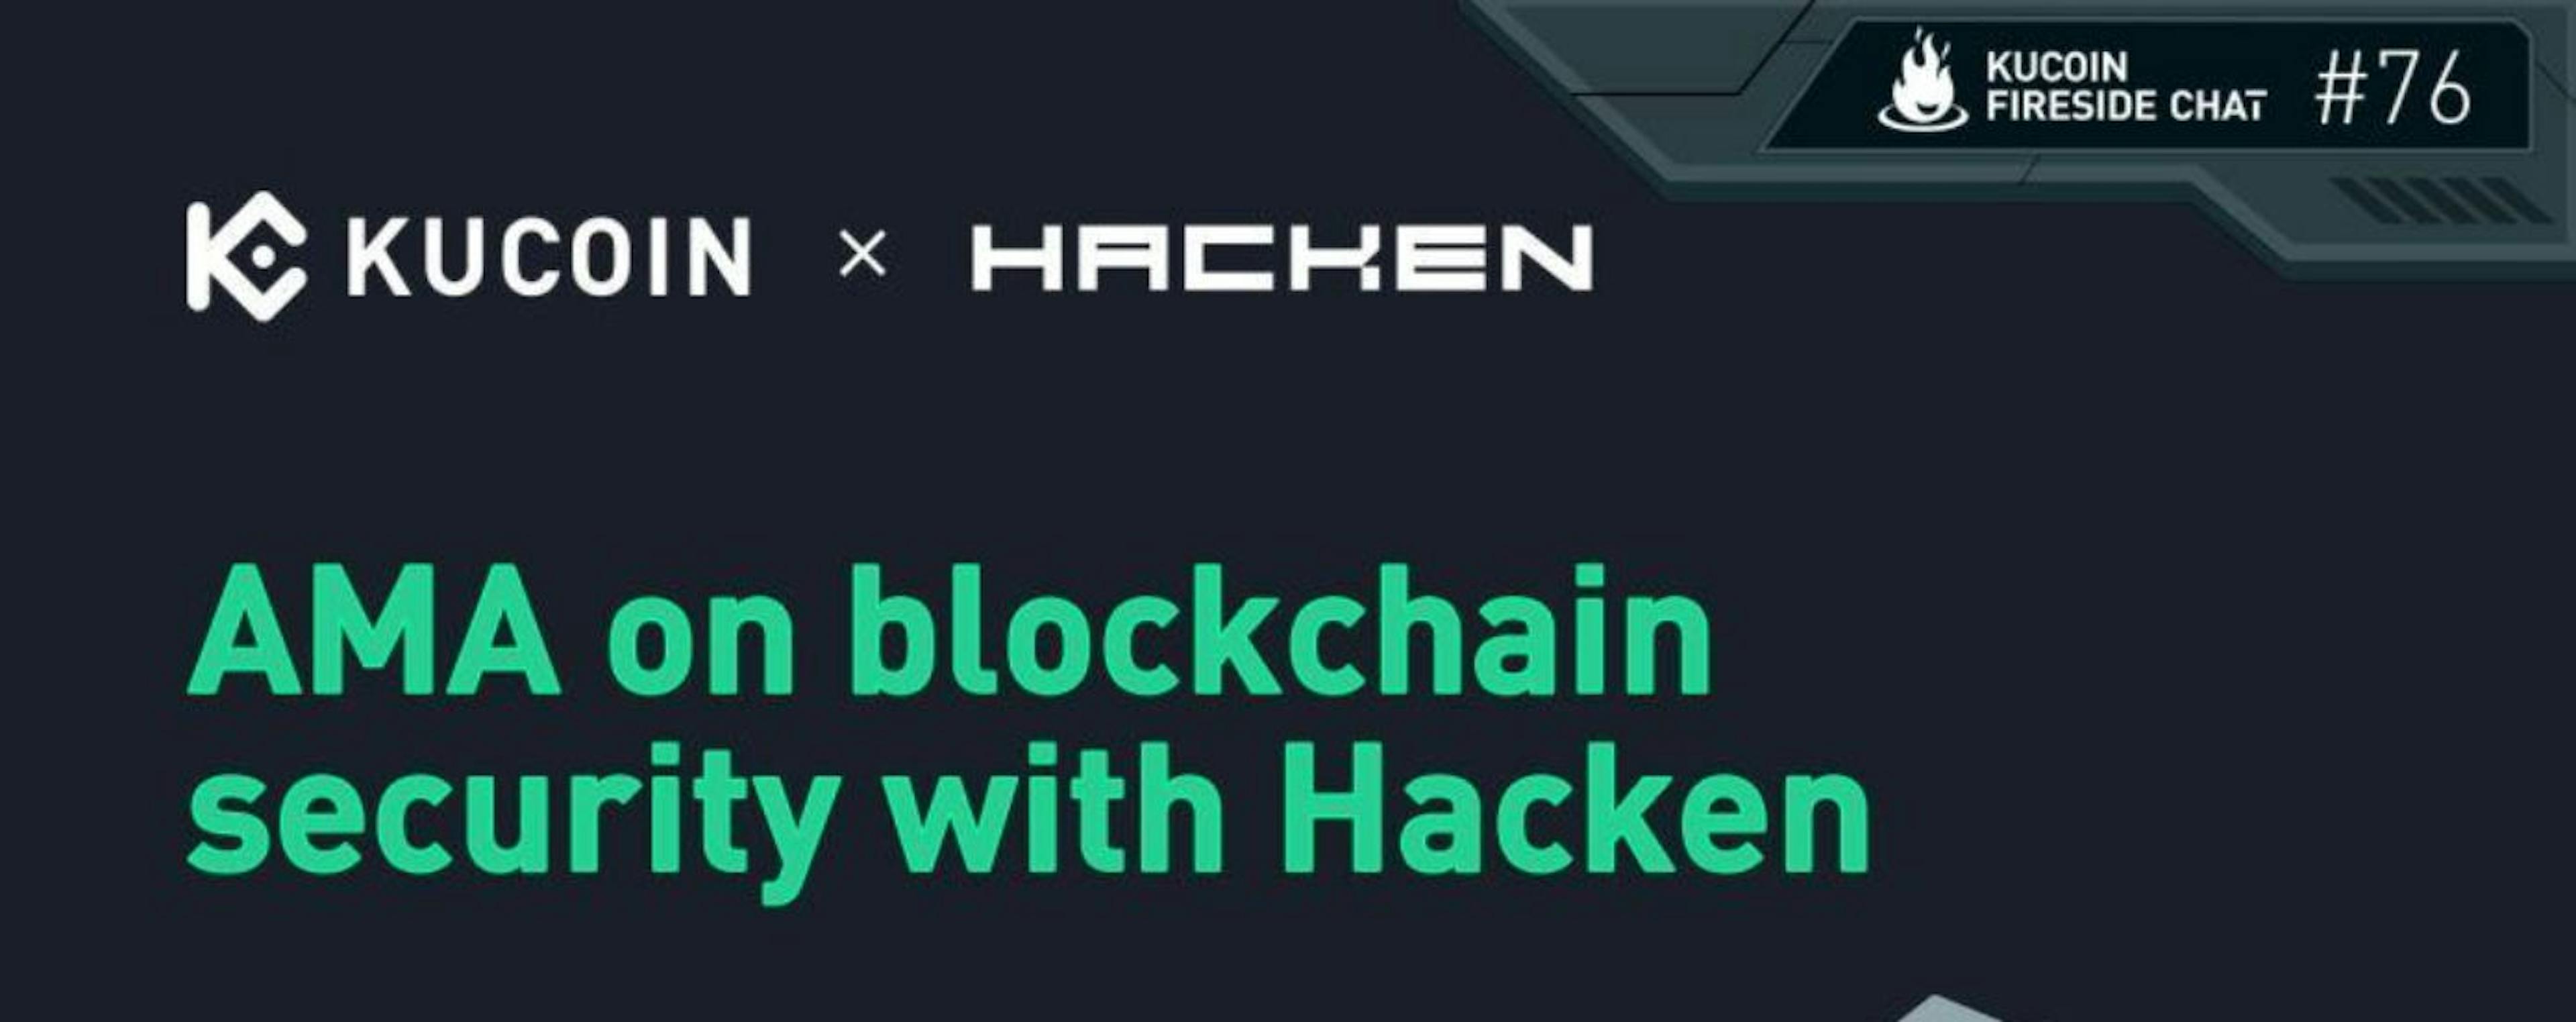 featured image - Bảo mật cho Blockchain với KuCoin và Hacken